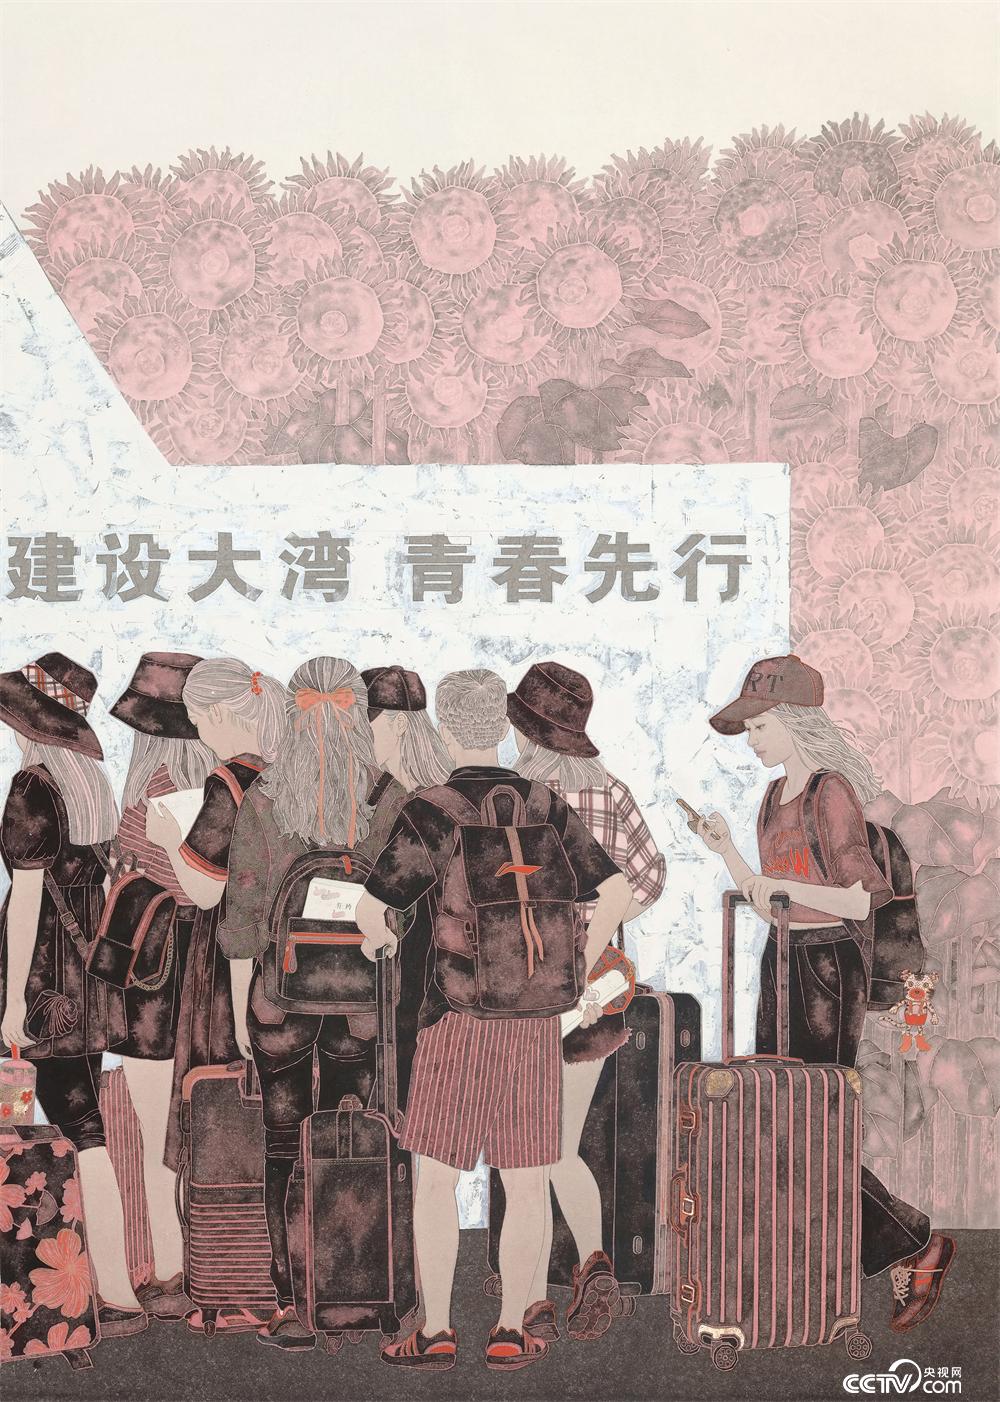 刘亚敏《圆梦大湾》 中国画  180厘米×127厘米  2022